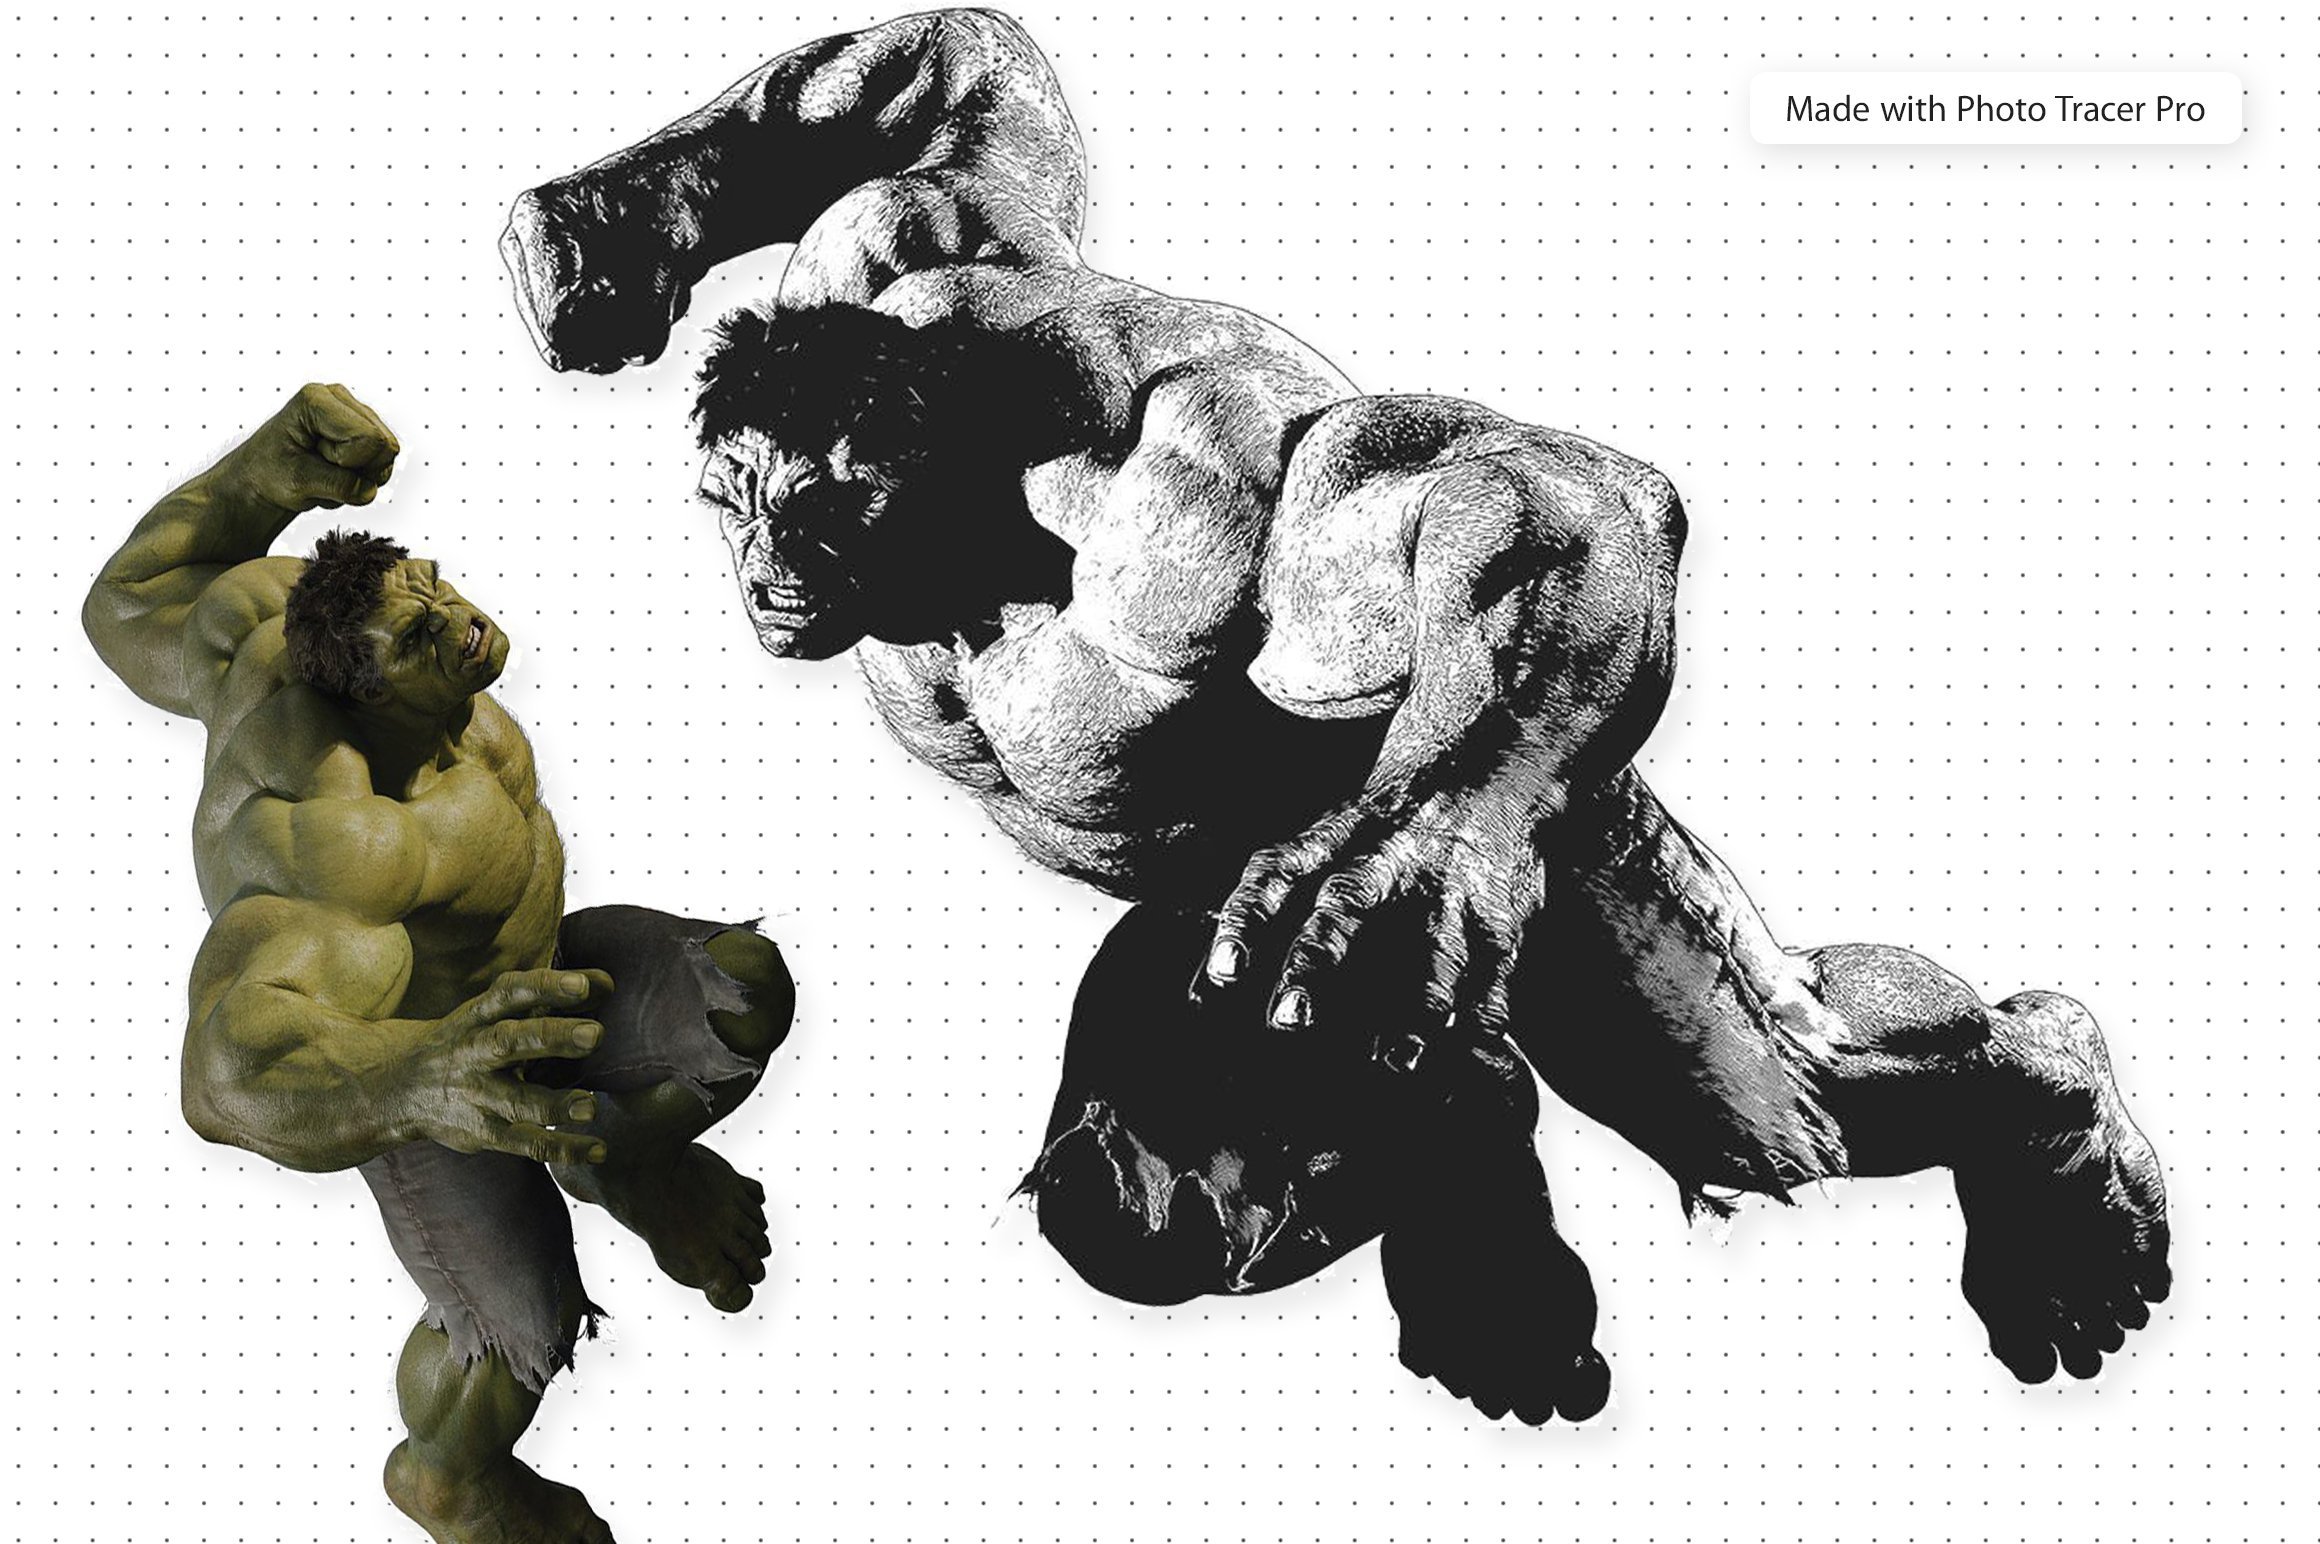 Photo tracer pro image of Hulk.